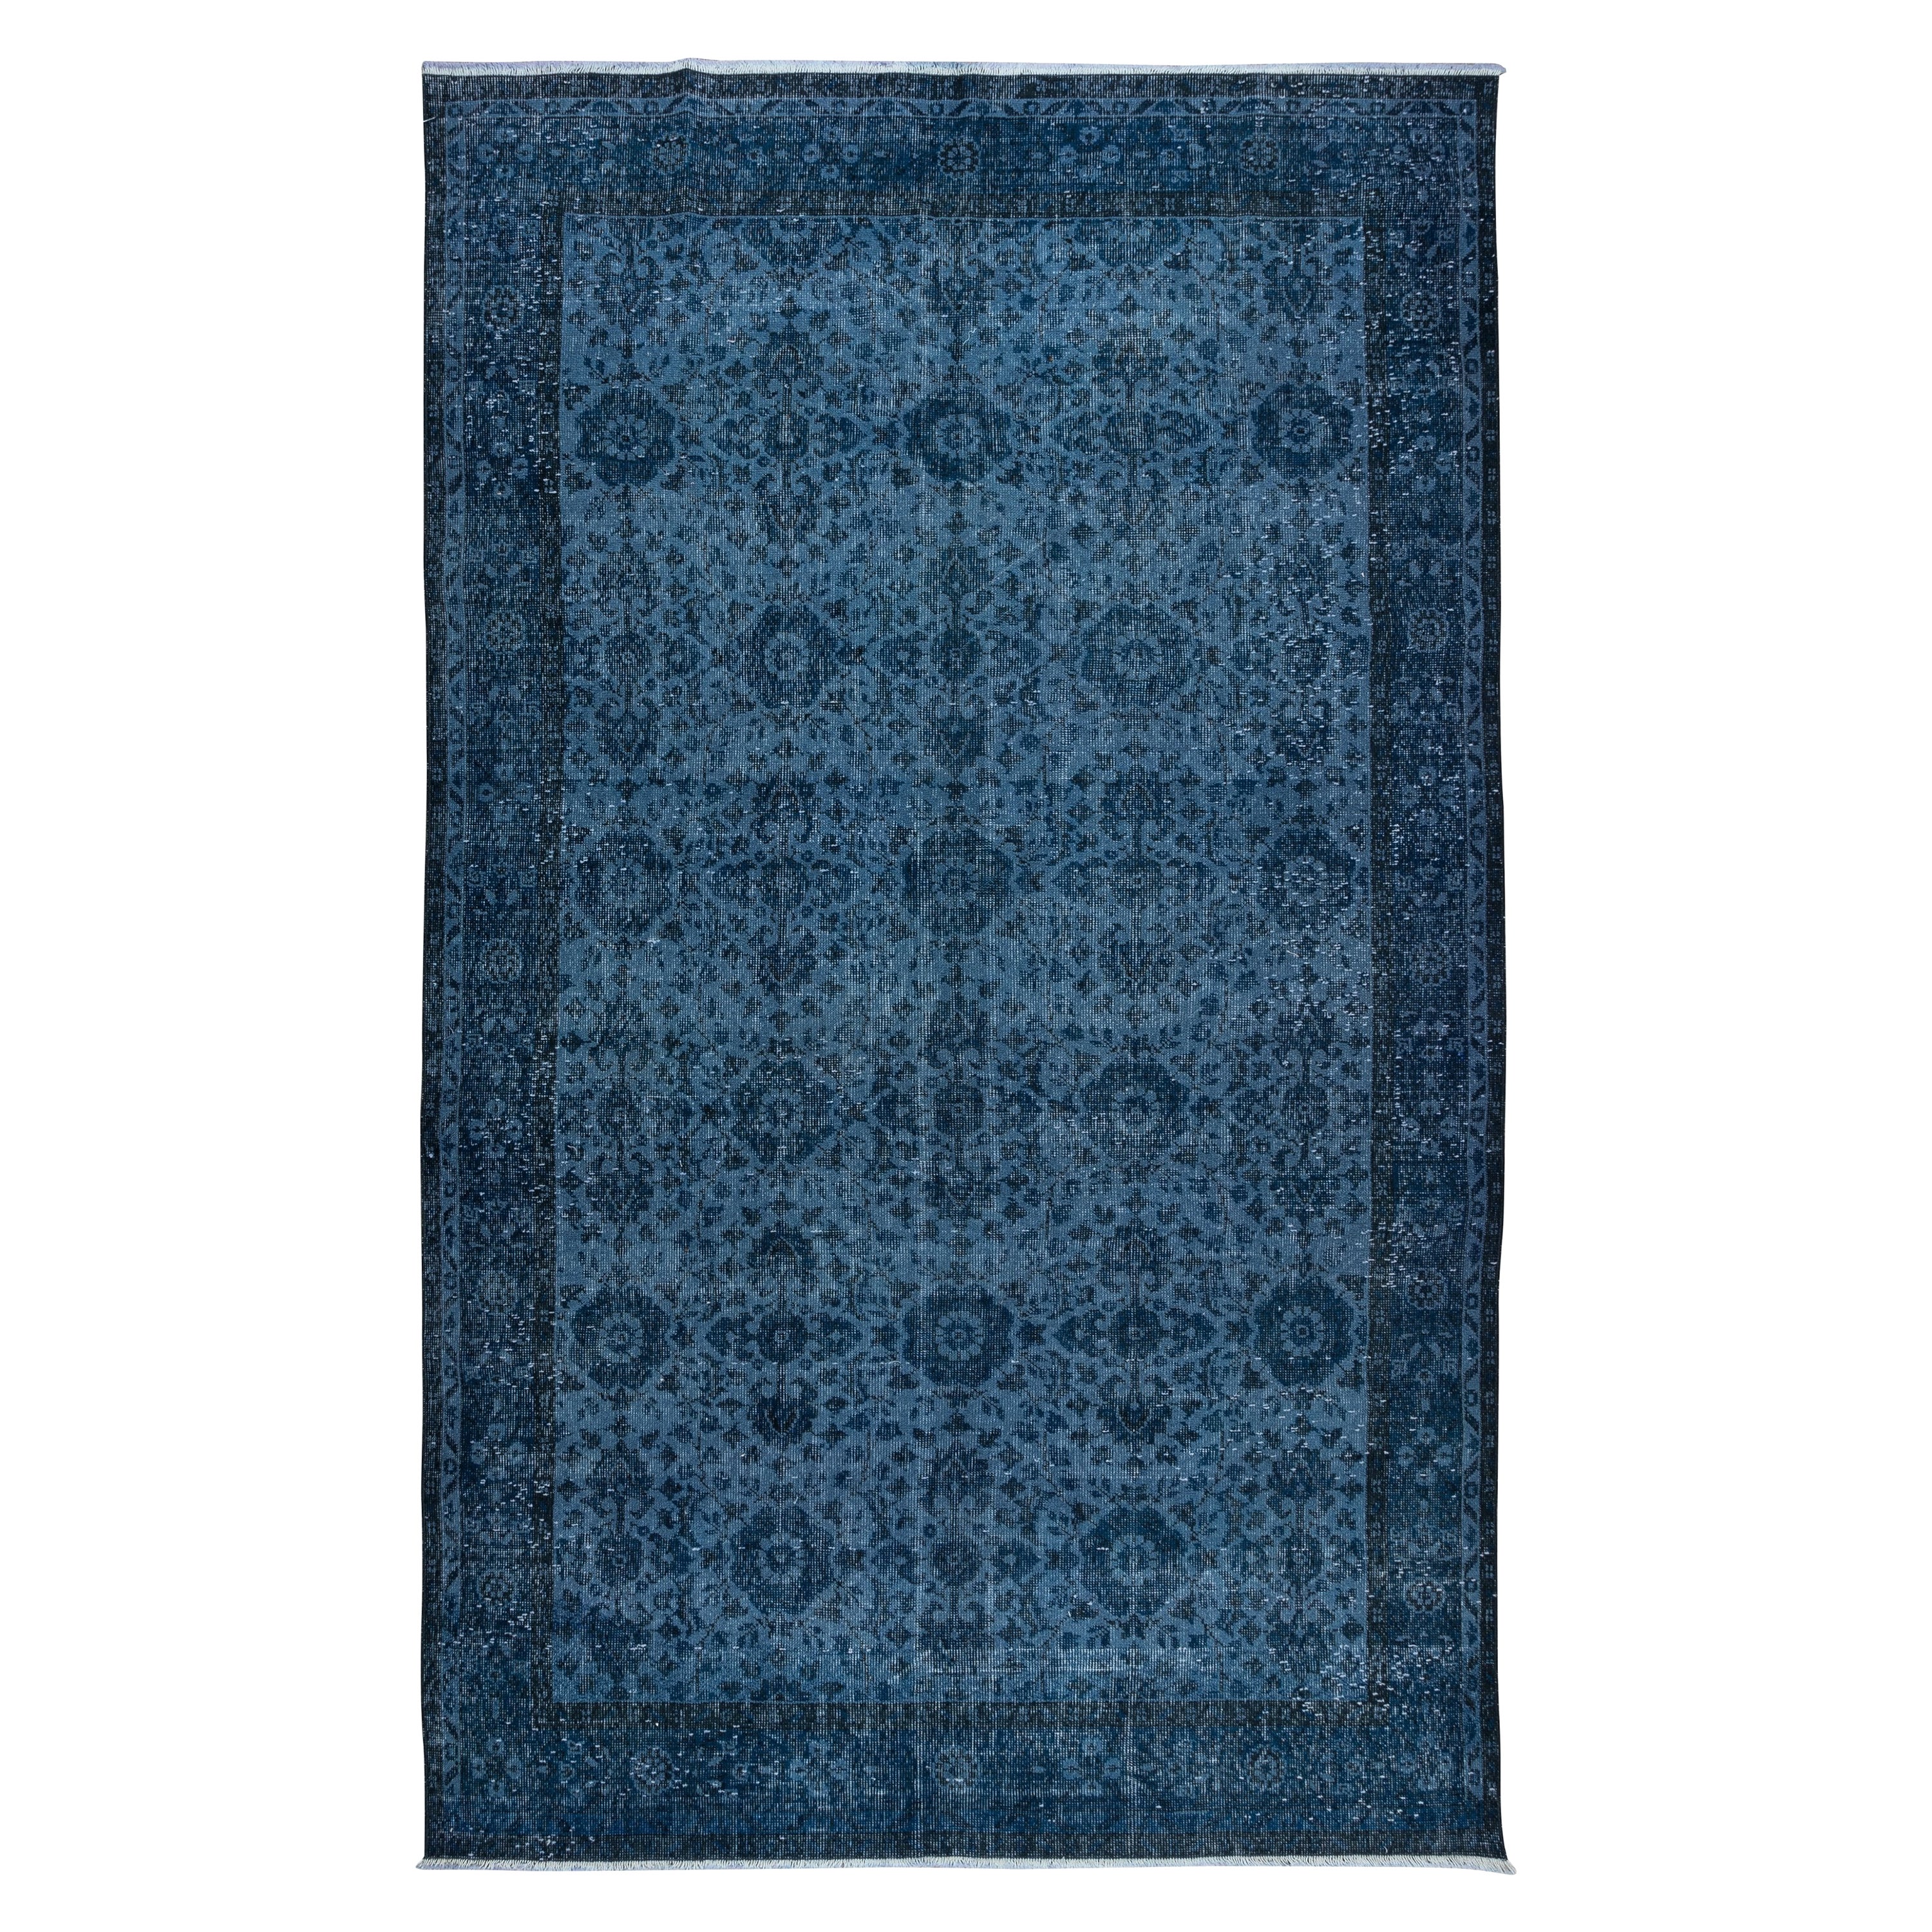 6.4x10.6 Ft Hand Knotsted Floral Rug, Blue Modern Modern Turkish Carpet for Living Room (Tapis turc moderne pour le salon) en vente